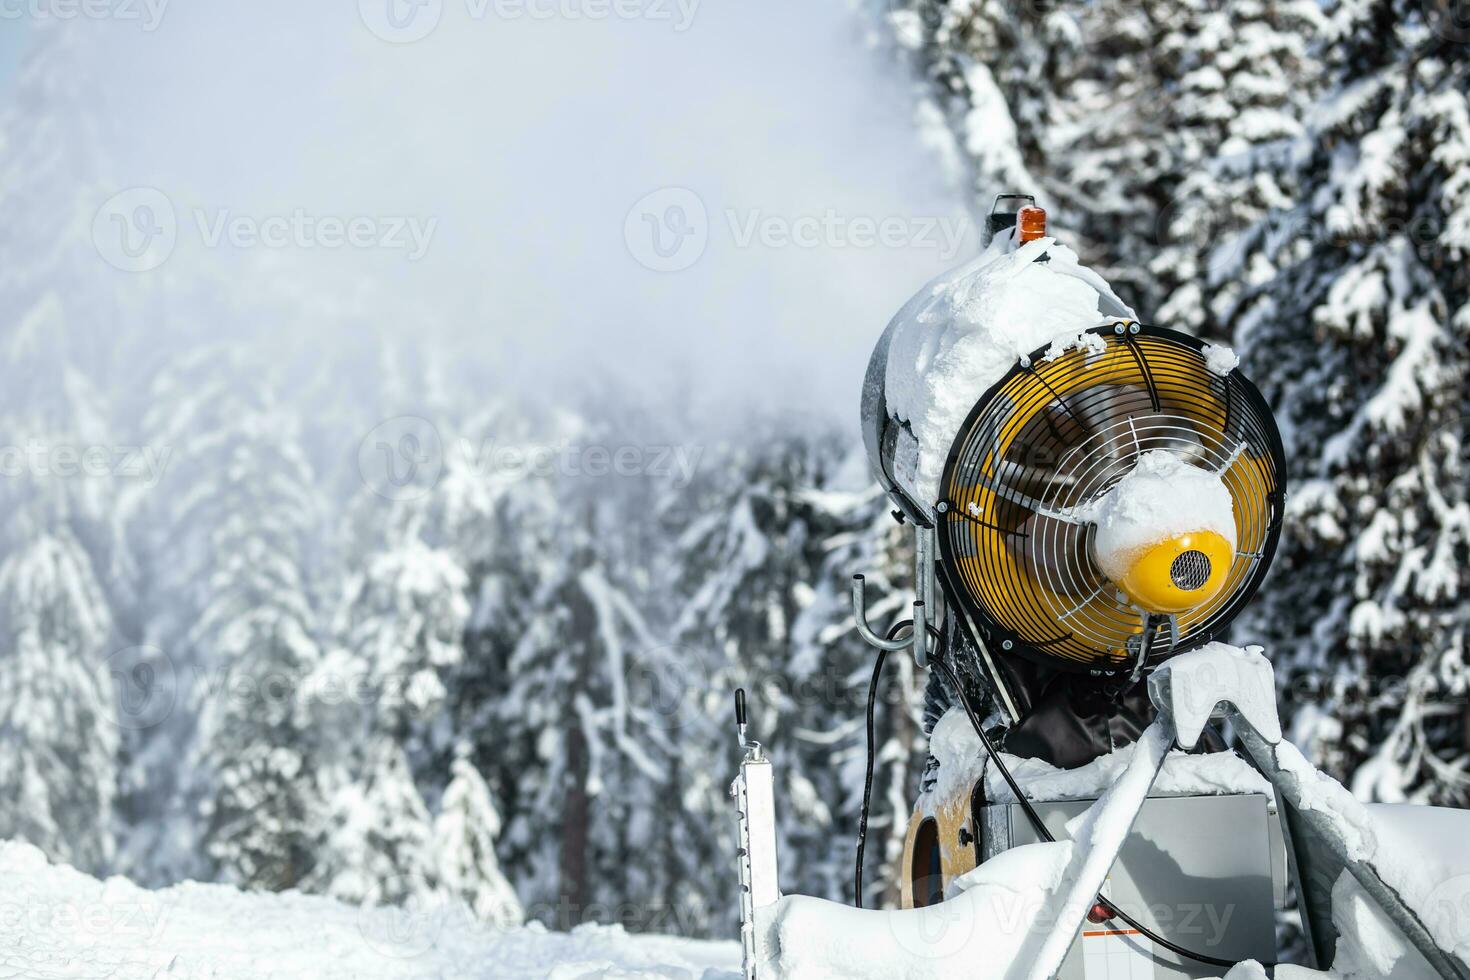 neve canhão arma de fogo ou máquina sprays água e neva uma esqui ou pelo país rastrear foto